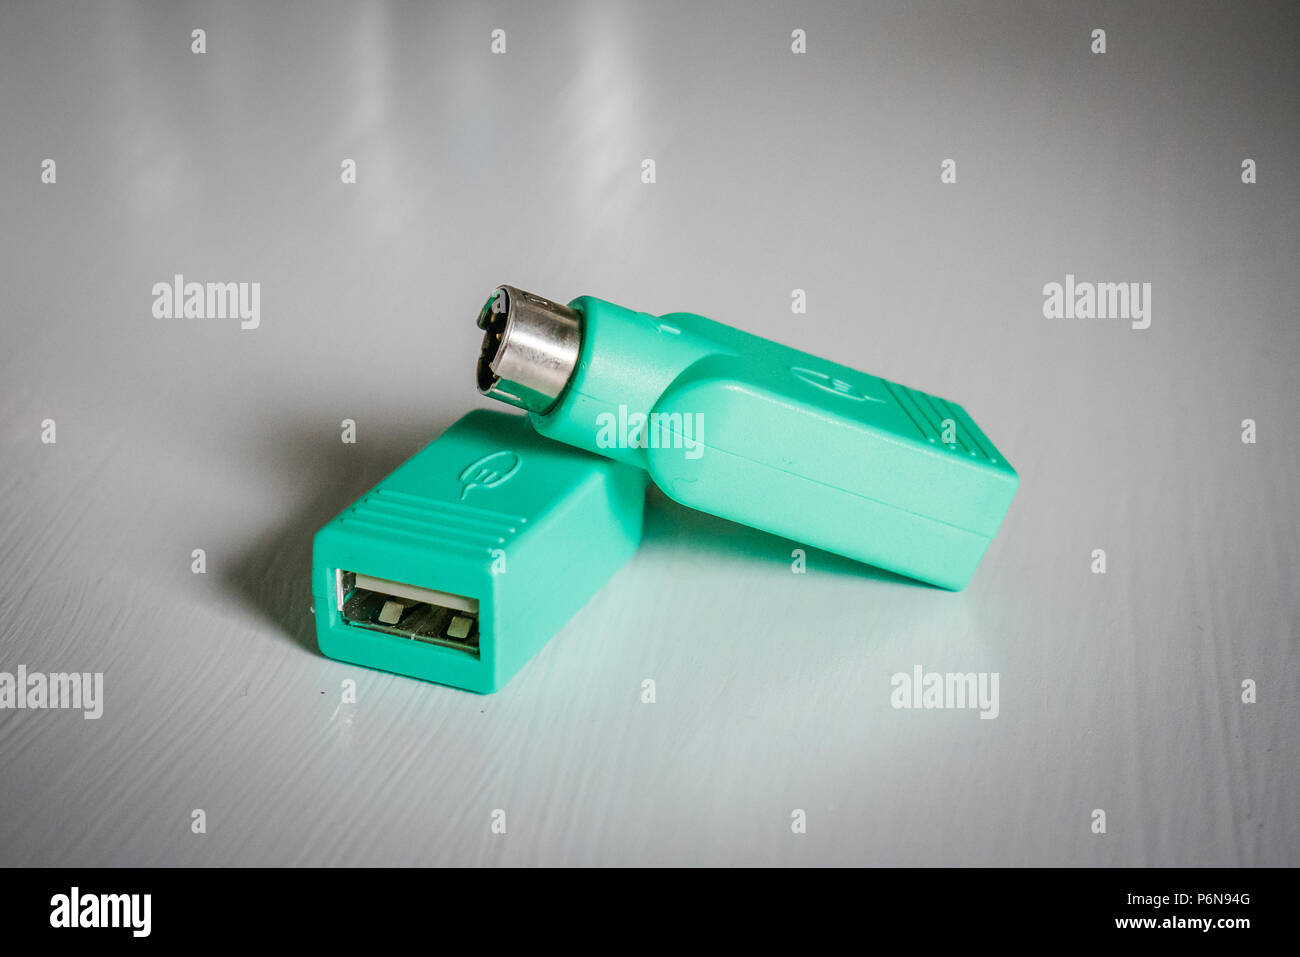 Grün ps2-Anschluss zu Usb Adapter für alte Computer Tastaturen  Stockfotografie - Alamy